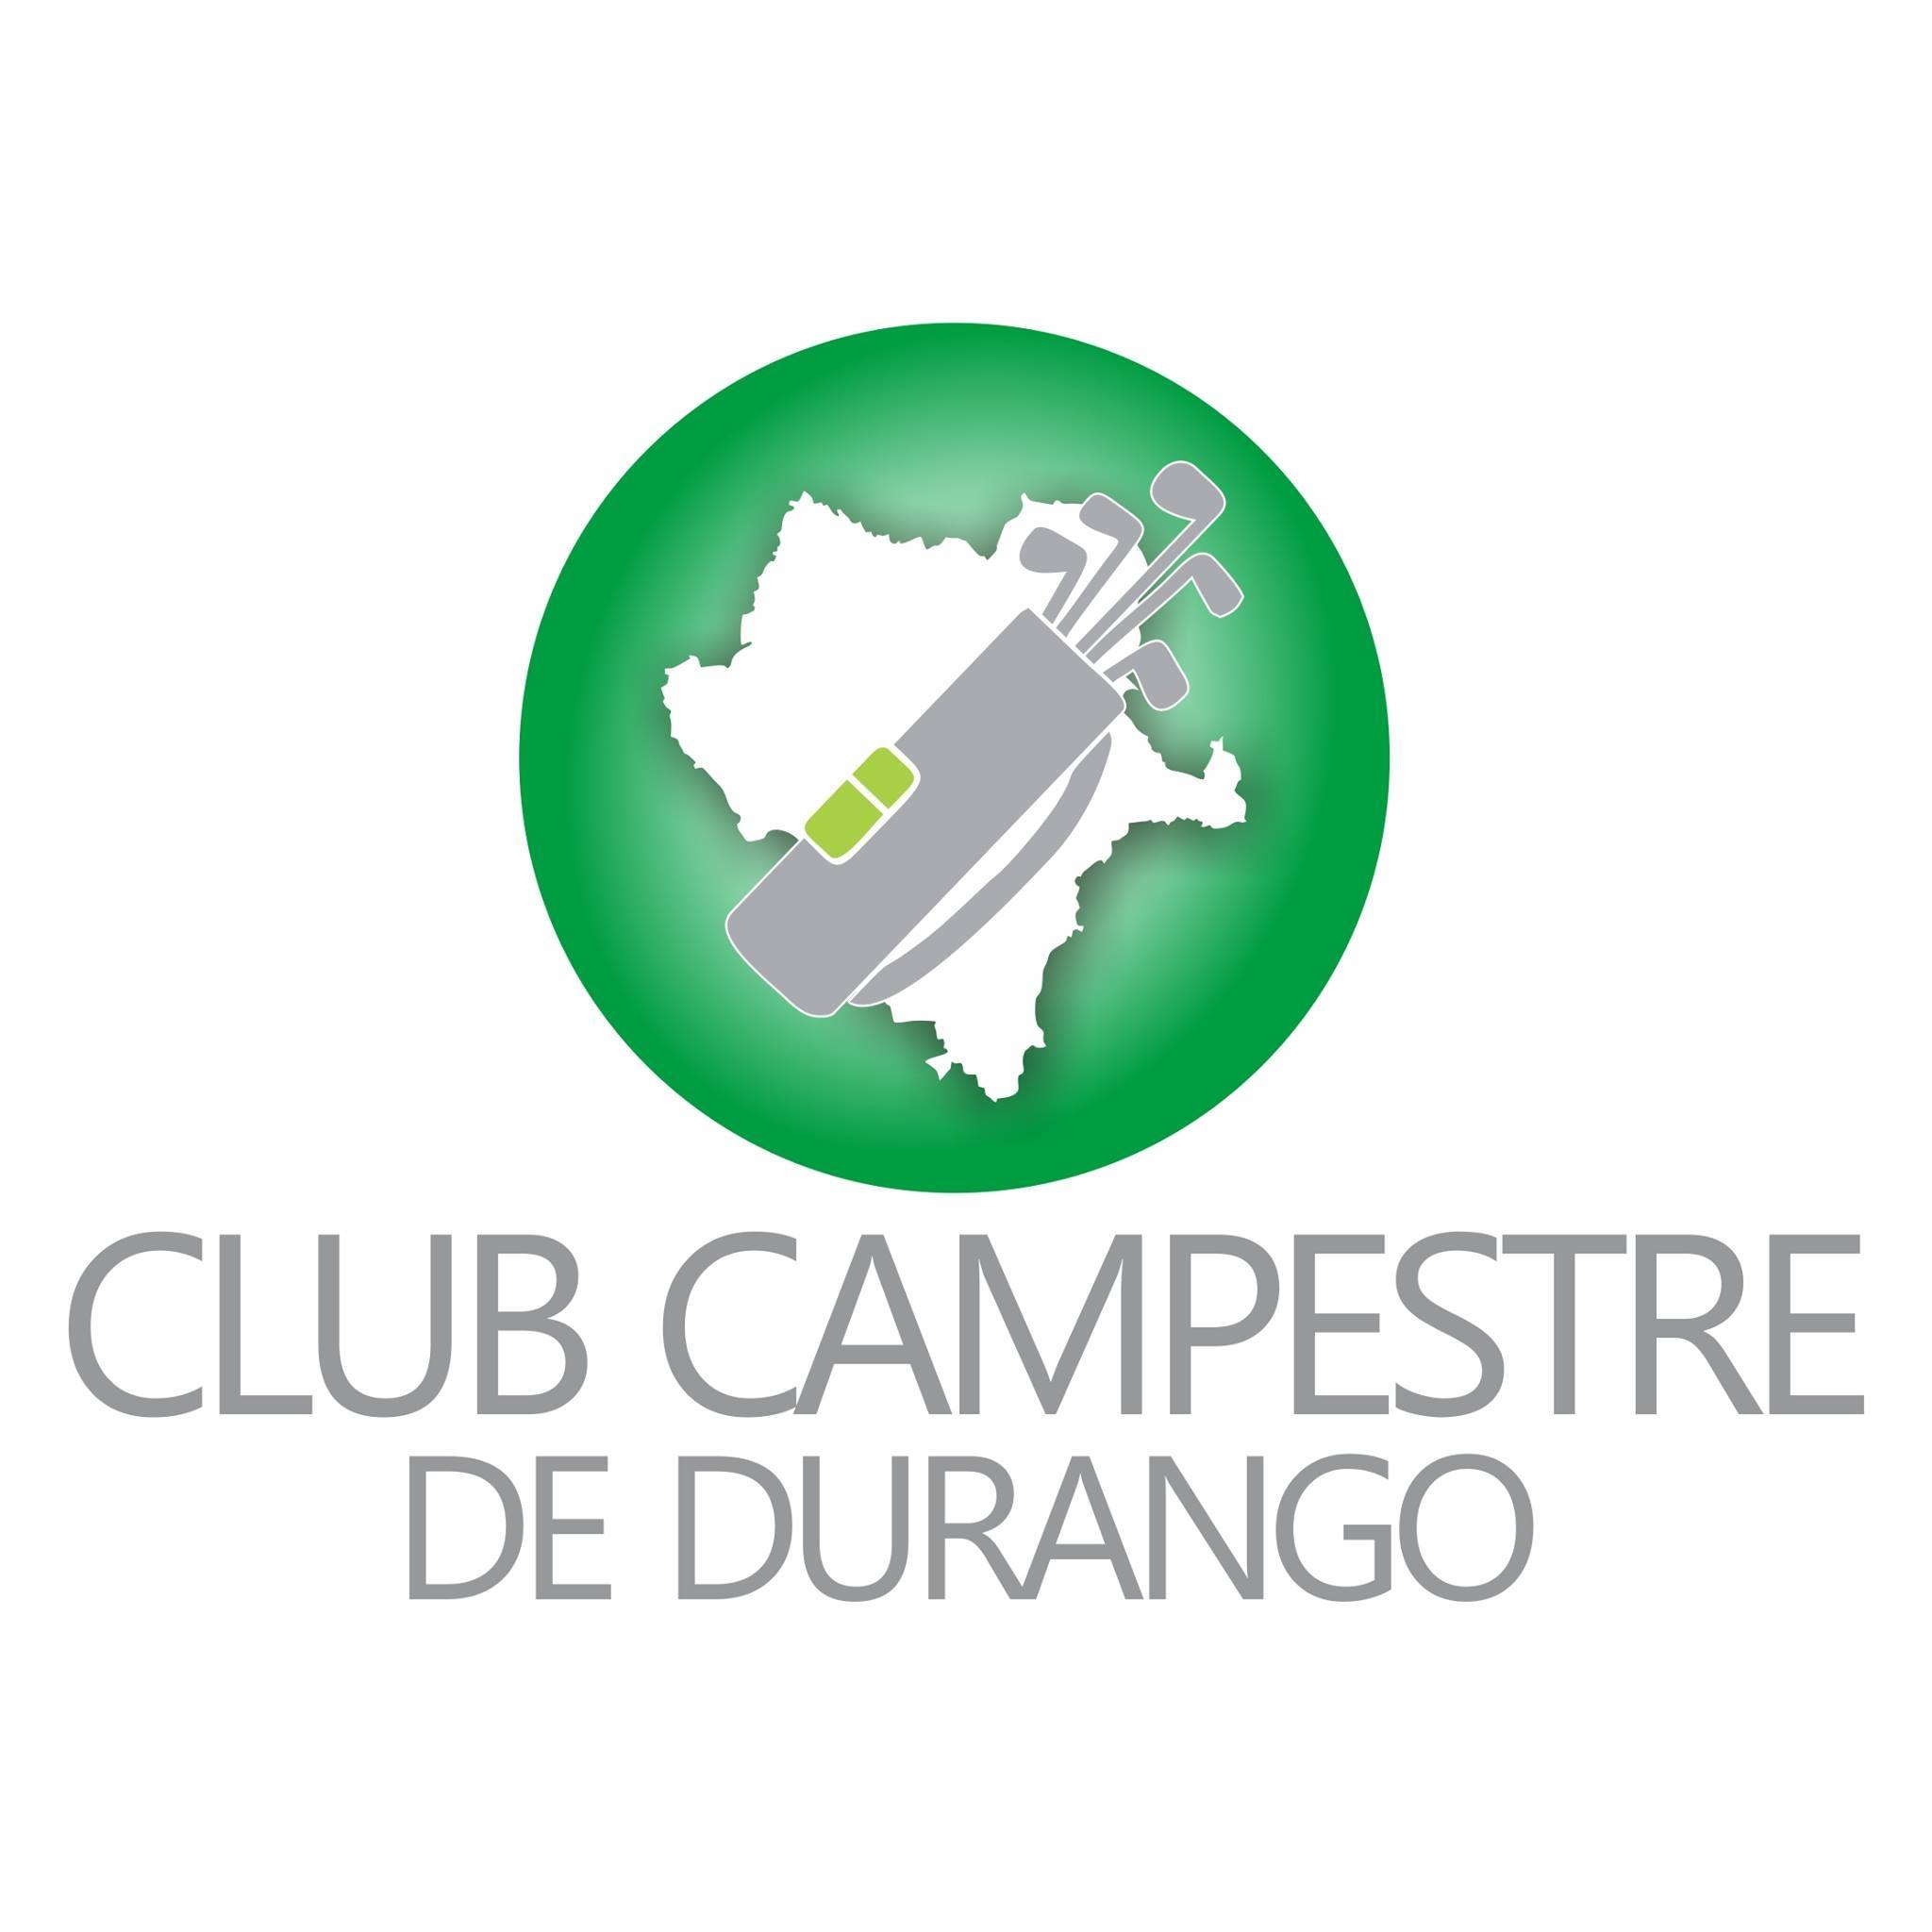 Club Campestre de Durango